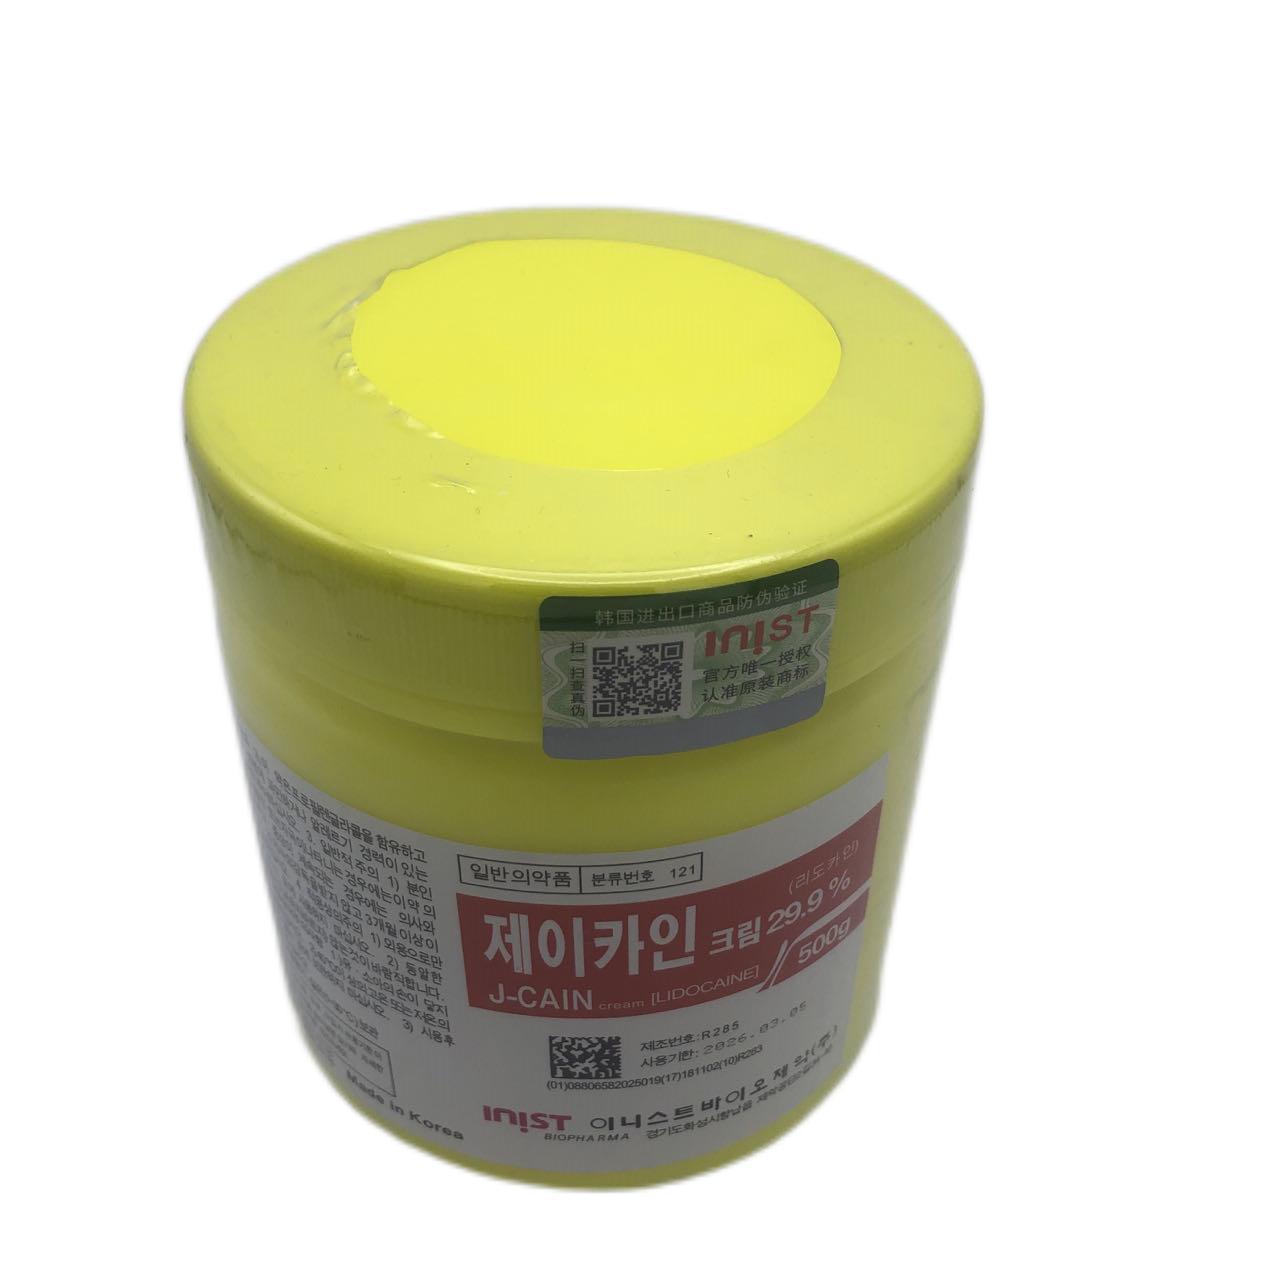 J-Cain 29.9% Numbing Cream500g